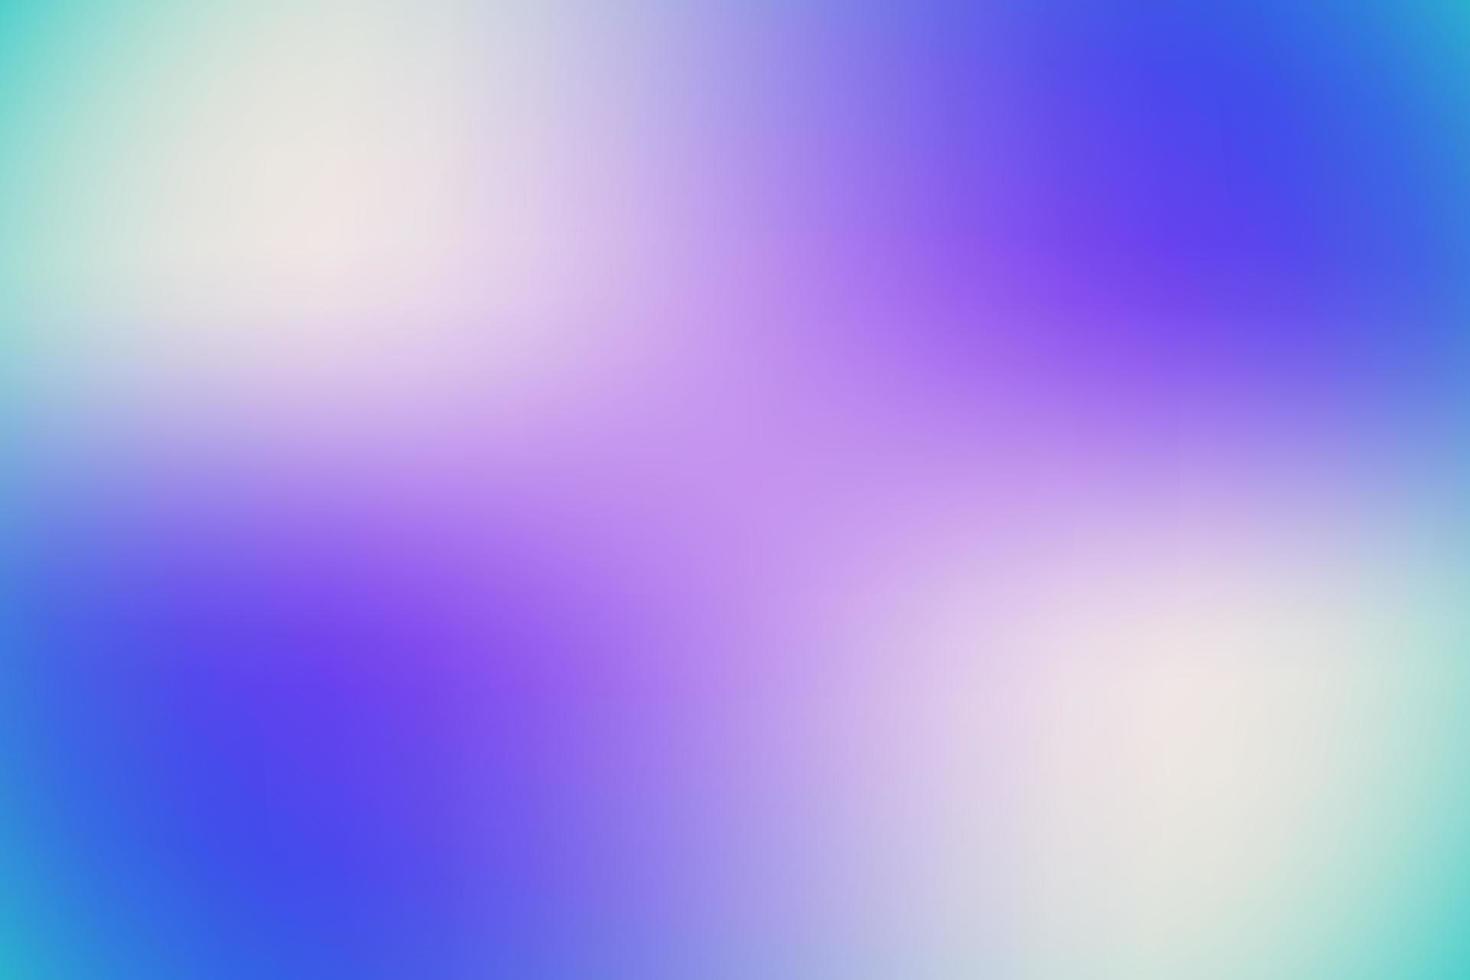 Blurred gradient background, blue, rainbow, rainbow background, background soft. vector